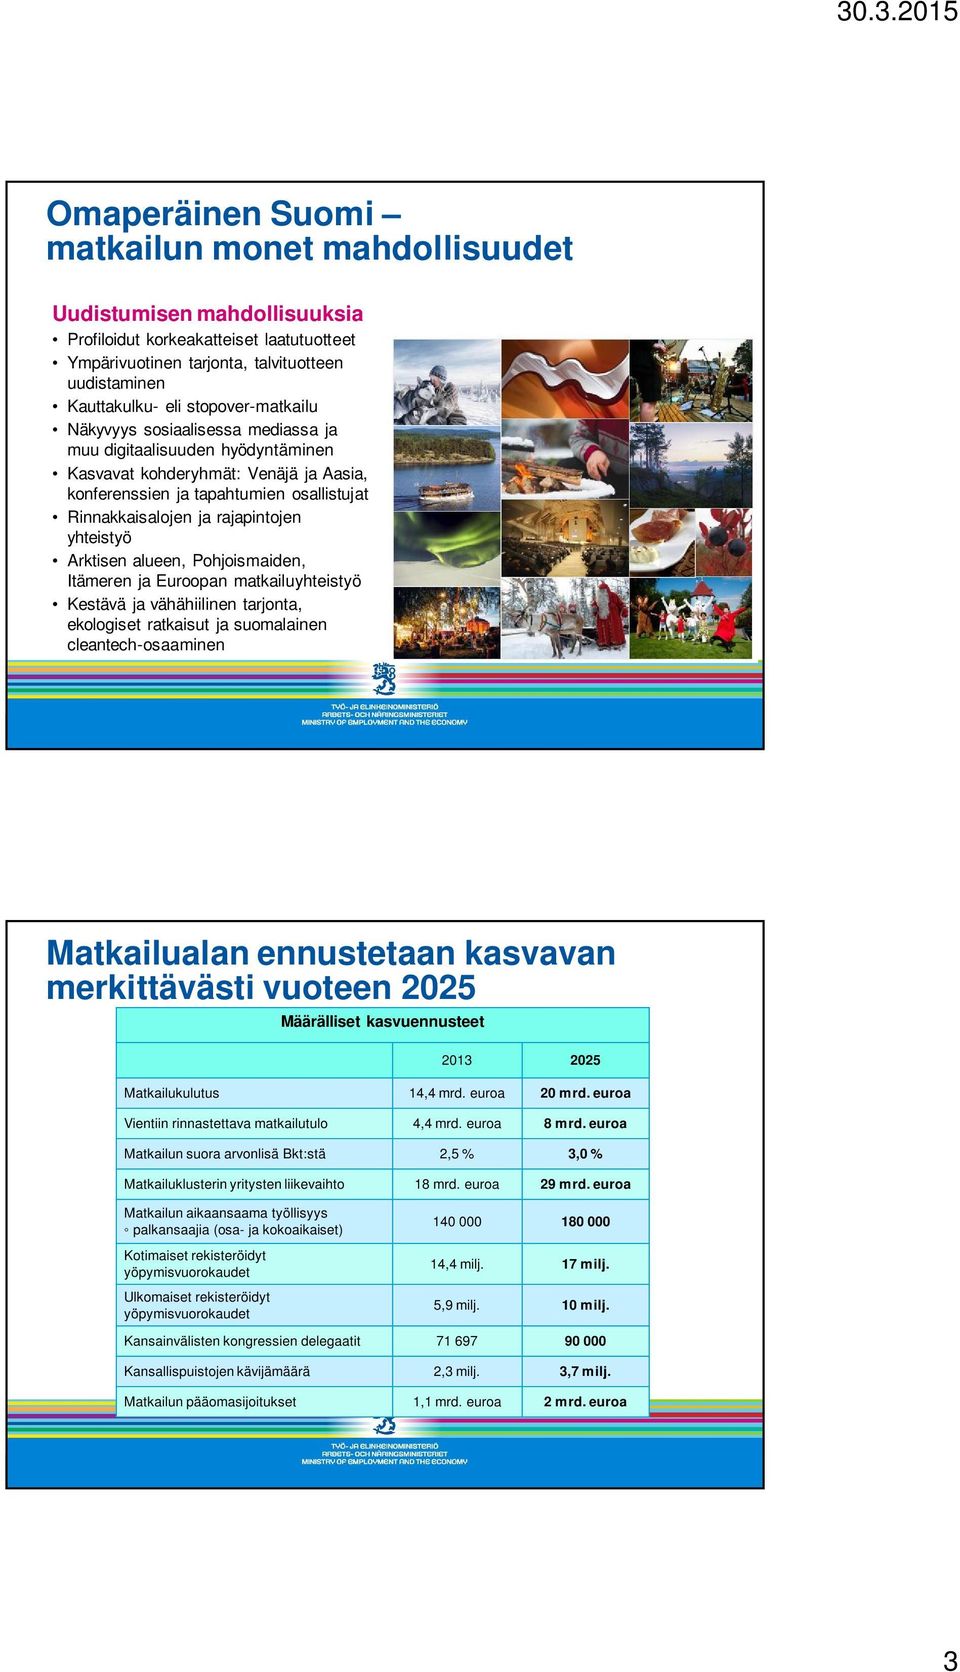 rajapintojen yhteistyö Arktisen alueen, Pohjoismaiden, Itämeren ja Euroopan matkailuyhteistyö Kestävä ja vähähiilinen tarjonta, ekologiset ratkaisut ja suomalainen cleantech-osaaminen Matkailualan